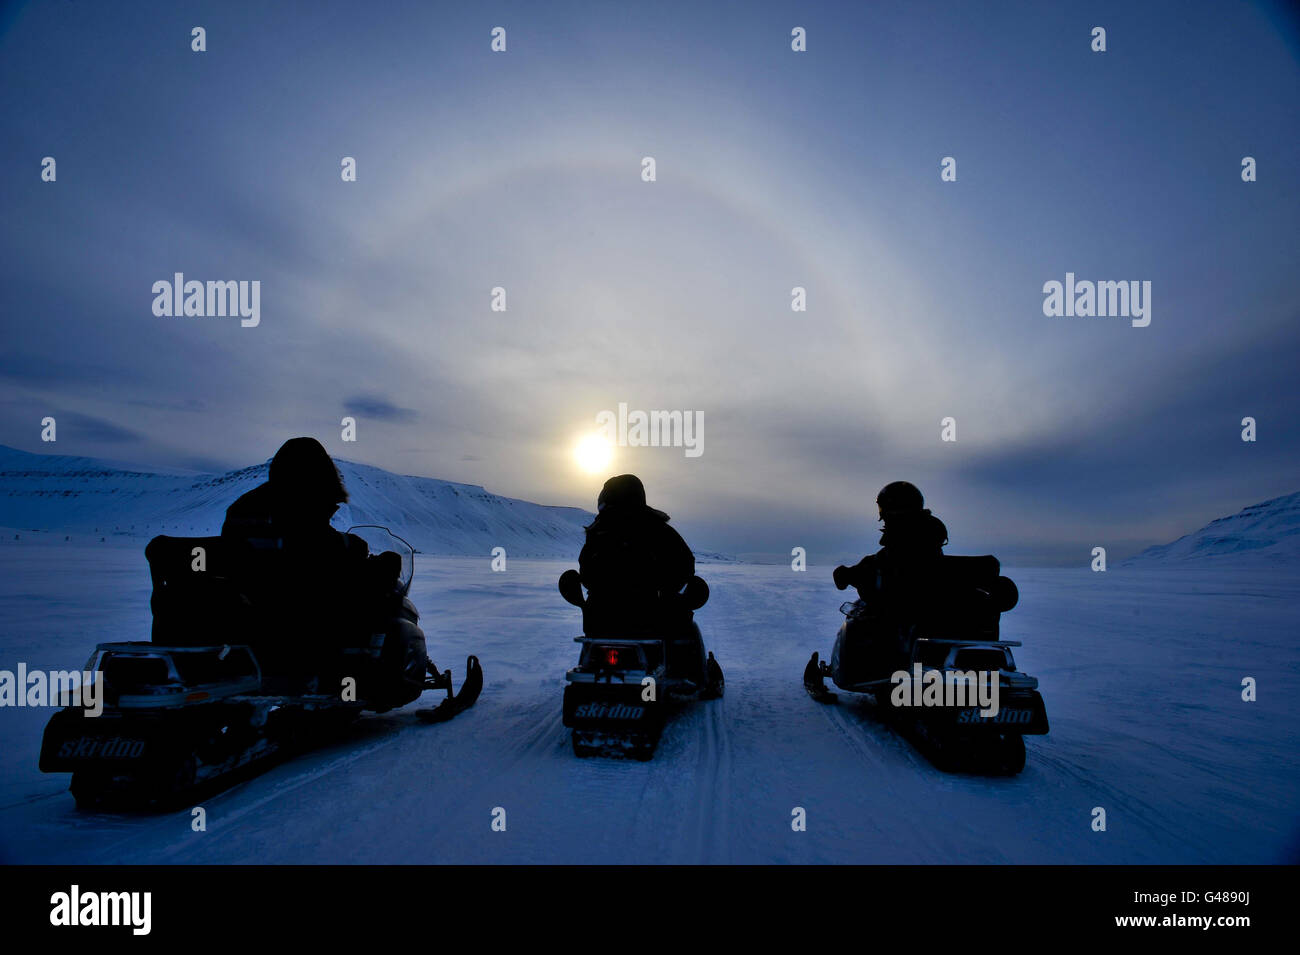 Die Leute auf den Ski-Doos bewundern einen Heiligenschein, auch bekannt als Nimbus, Eisbogen oder Gloriole, Das ist ein optisches Phänomen, das durch Eiskristalle in Zirruswolken hoch in der oberen Troposphäre auf der Insel Spitzbergen auf dem Spitzbergen-Archipel im Polarkreis entsteht, wenn die norwegischen Inseln in die Sommersonnenzeit eintreten. Stockfoto